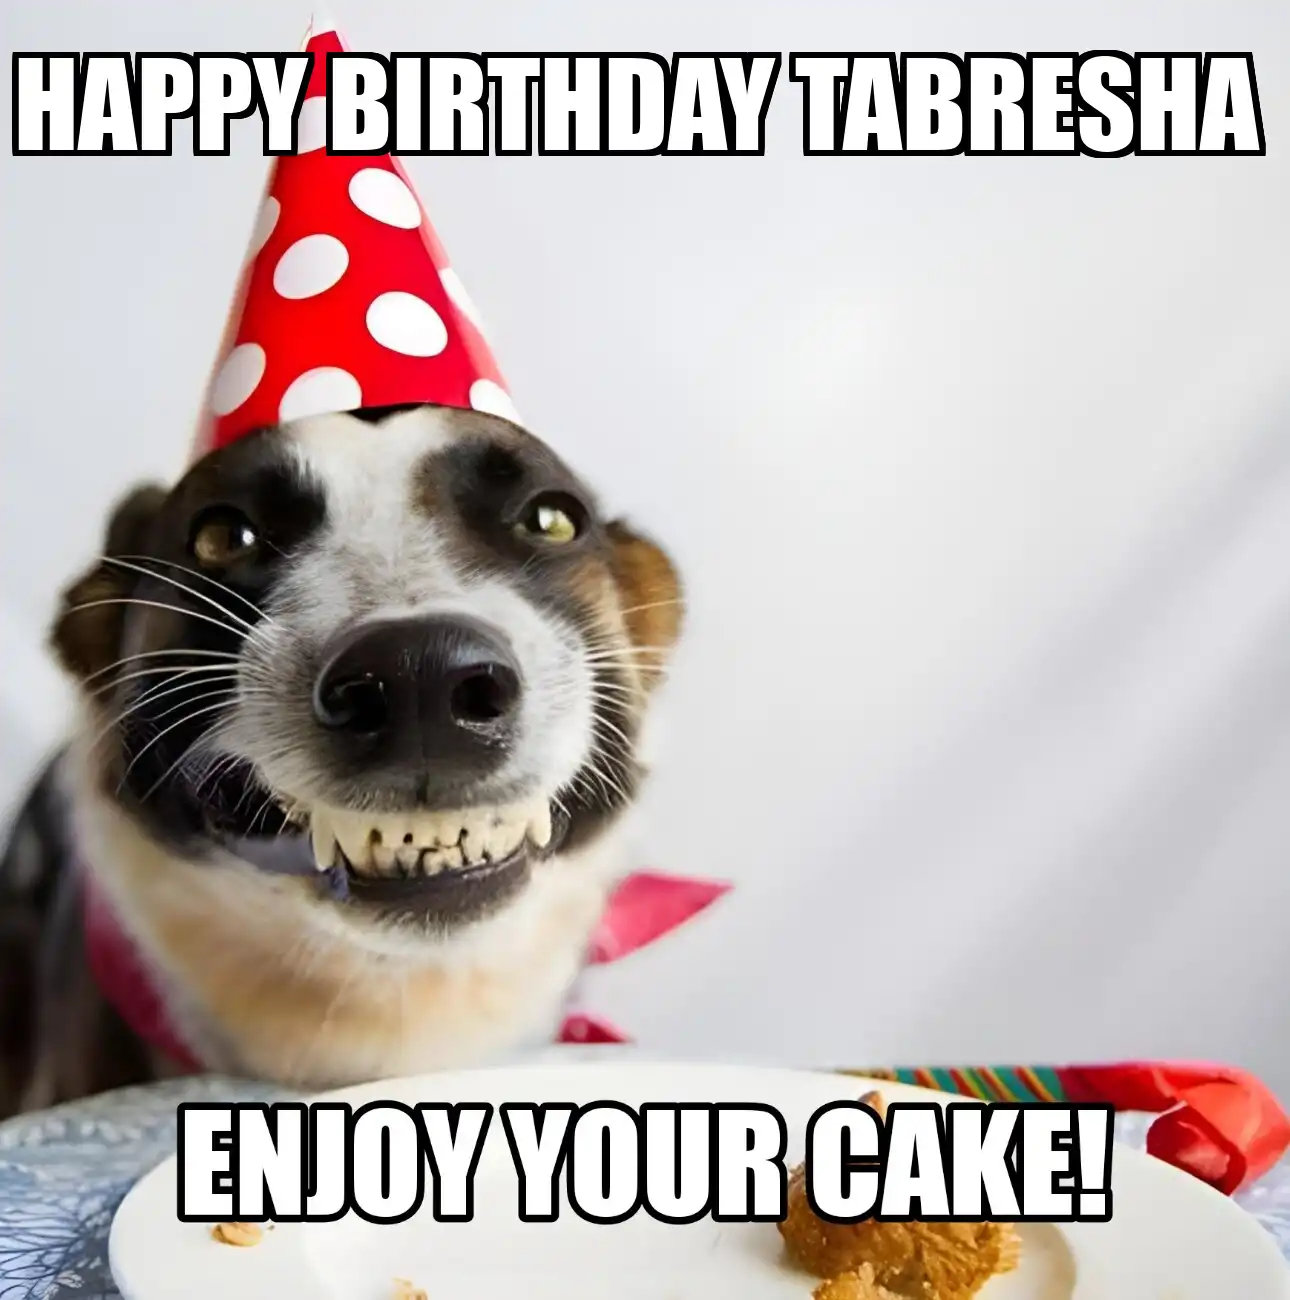 Happy Birthday Tabresha Enjoy Your Cake Dog Meme